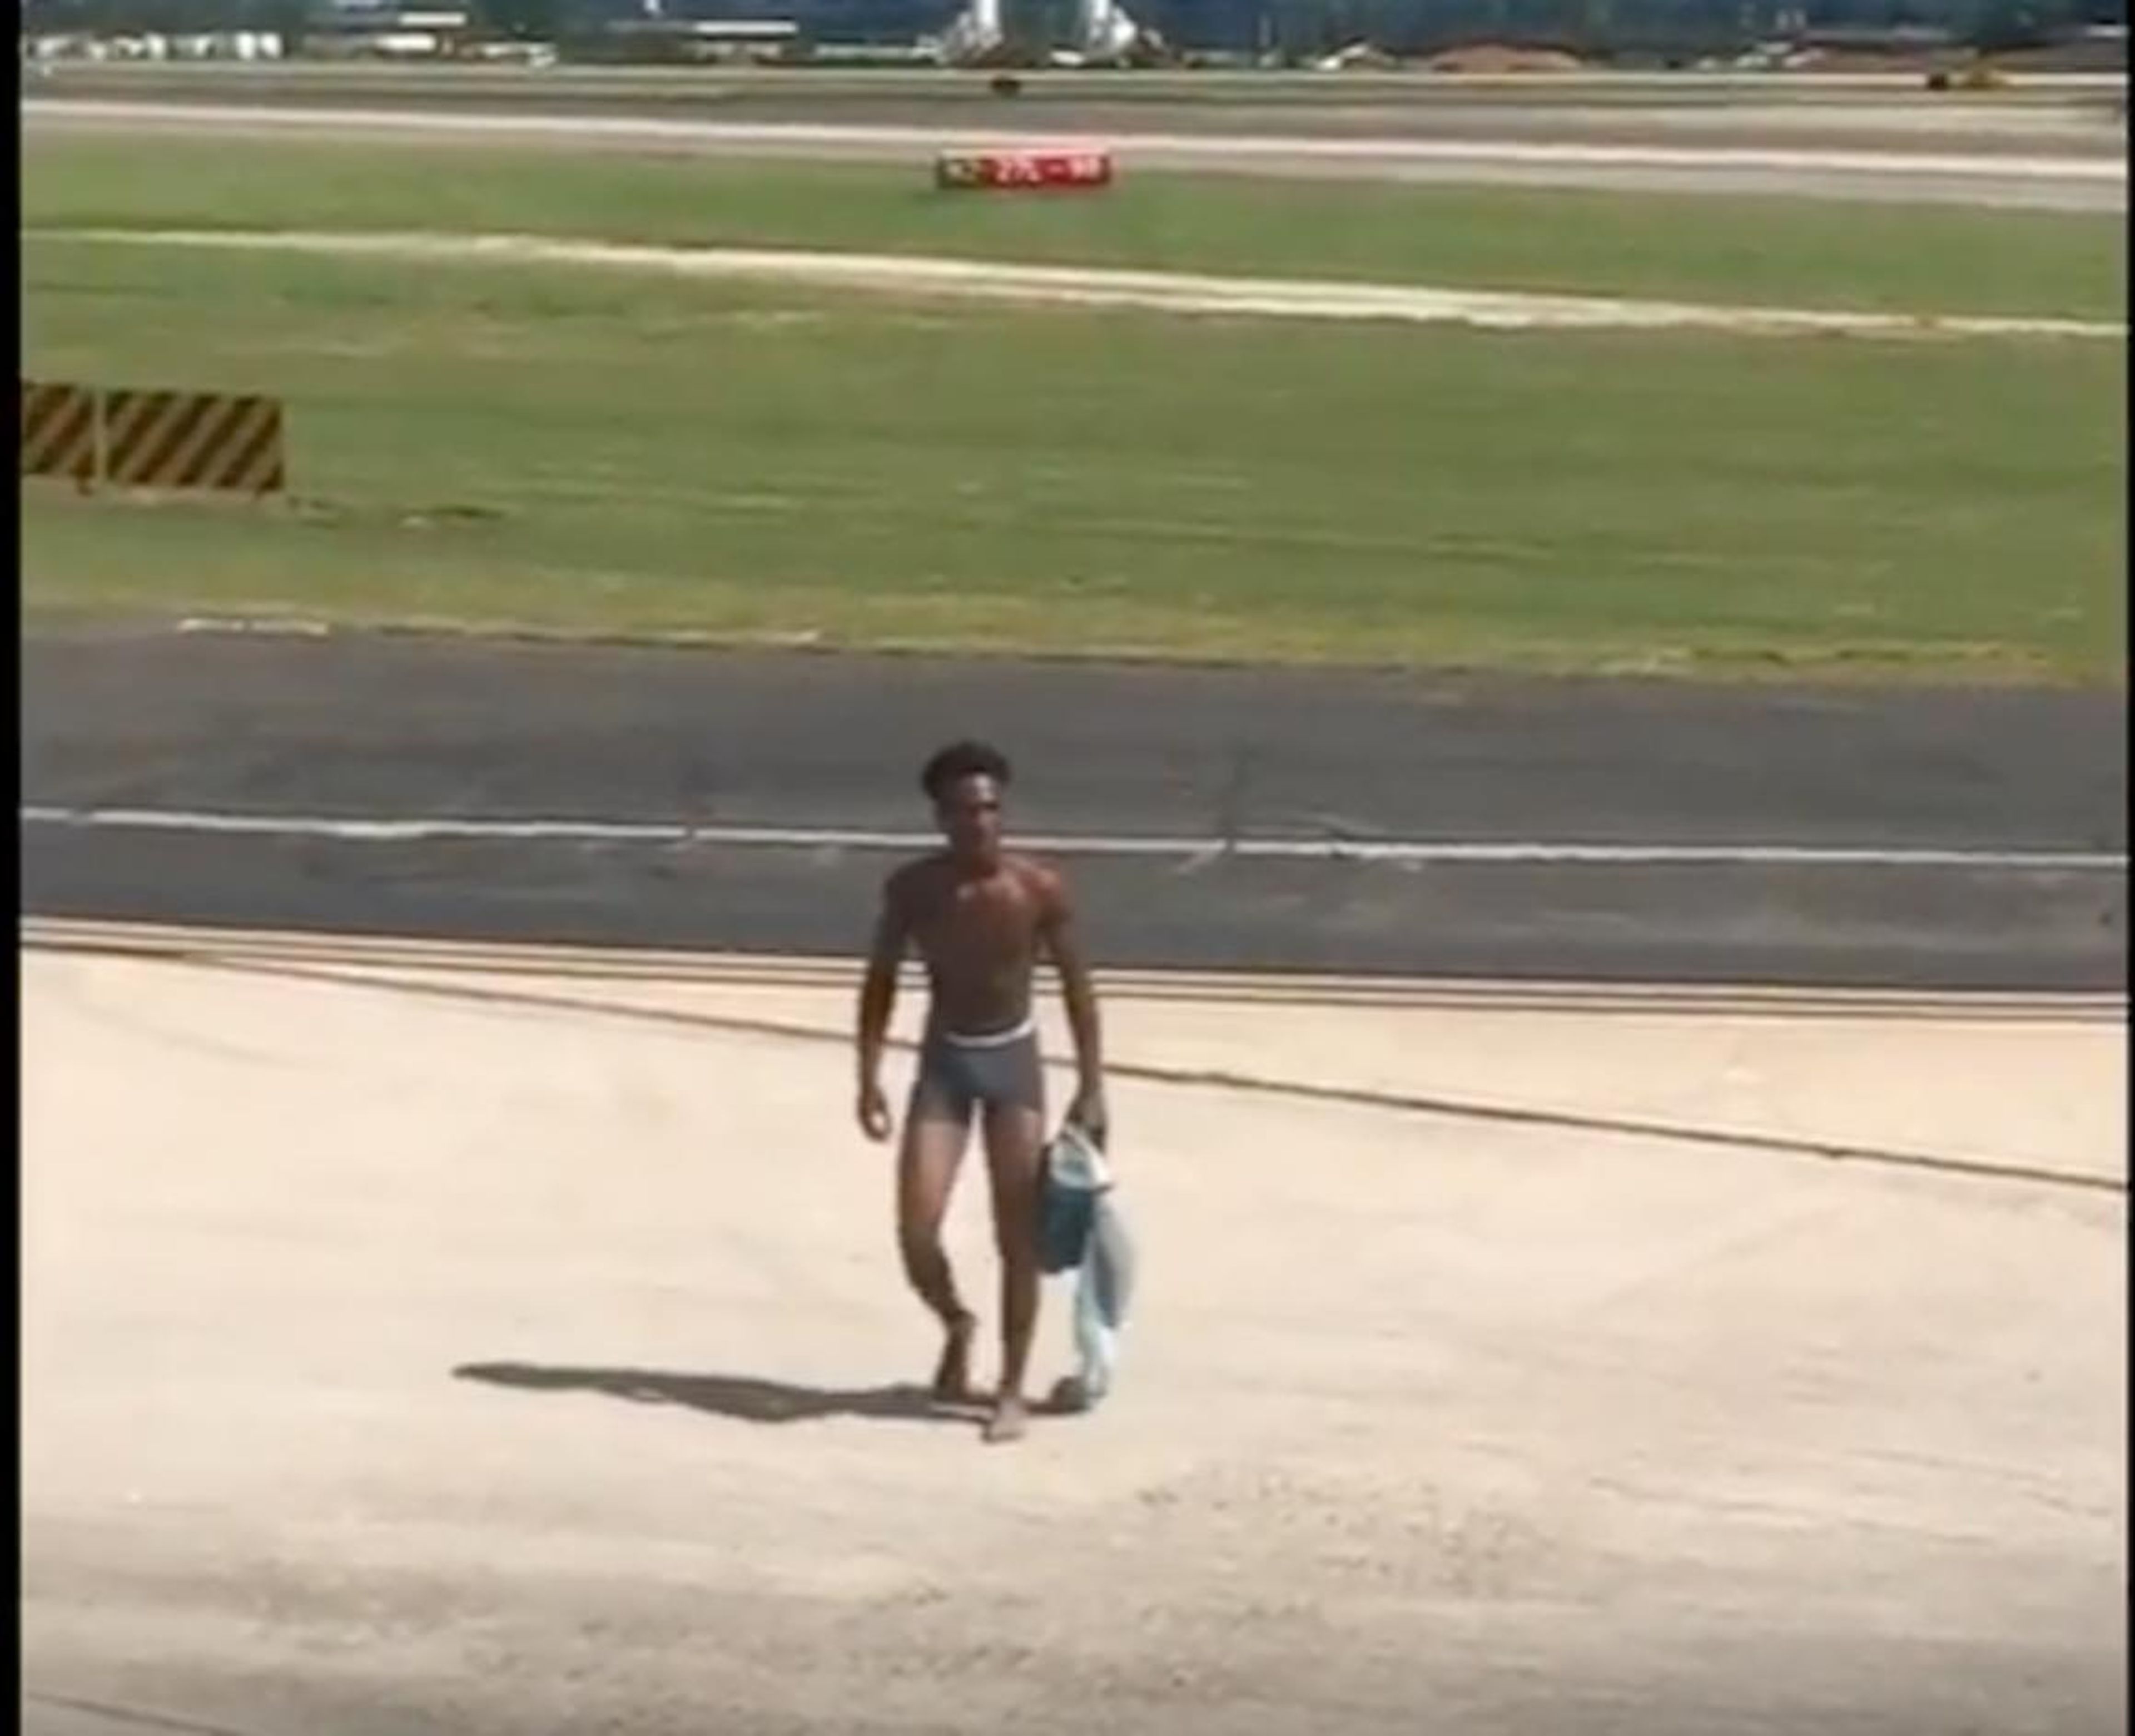 Jhryin Jones, de 19 años, corrió semi desnudo por el asfalto del aeropuerto con más tráfico del mundo.